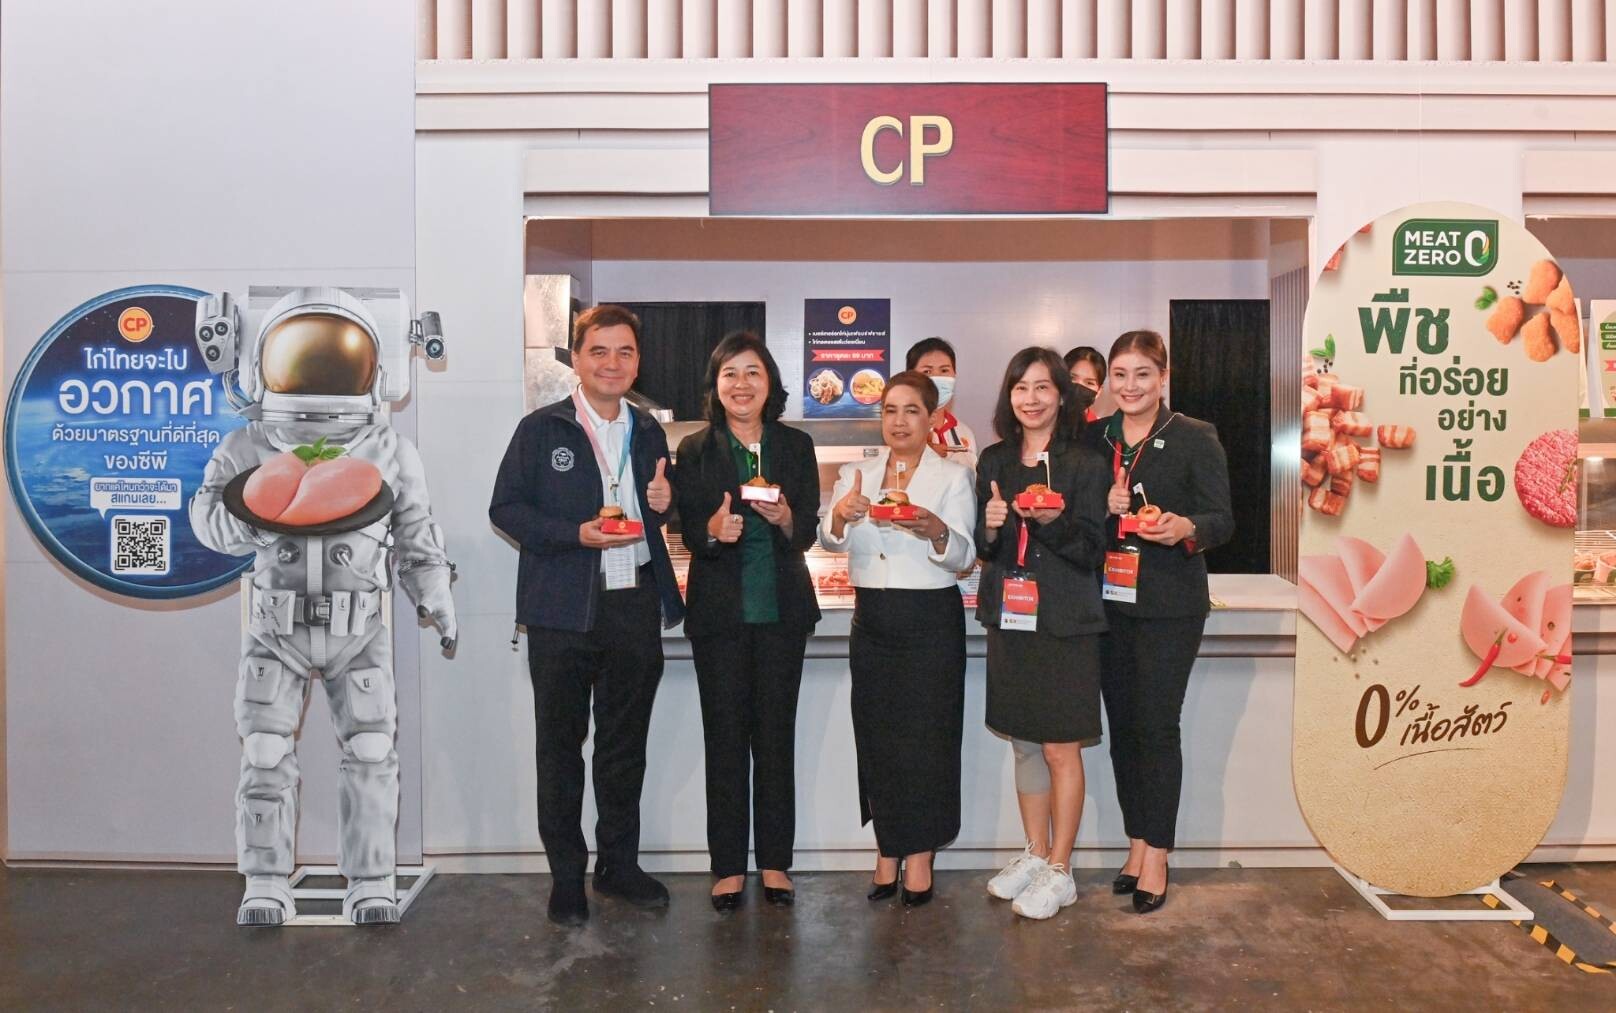 CPF ชูภารกิจ "ไก่ไทยจะไปอวกาศ" ตอบโจทย์ความมั่นคงทางอาหาร ในงานมหกรรมความยั่งยืน SX2023